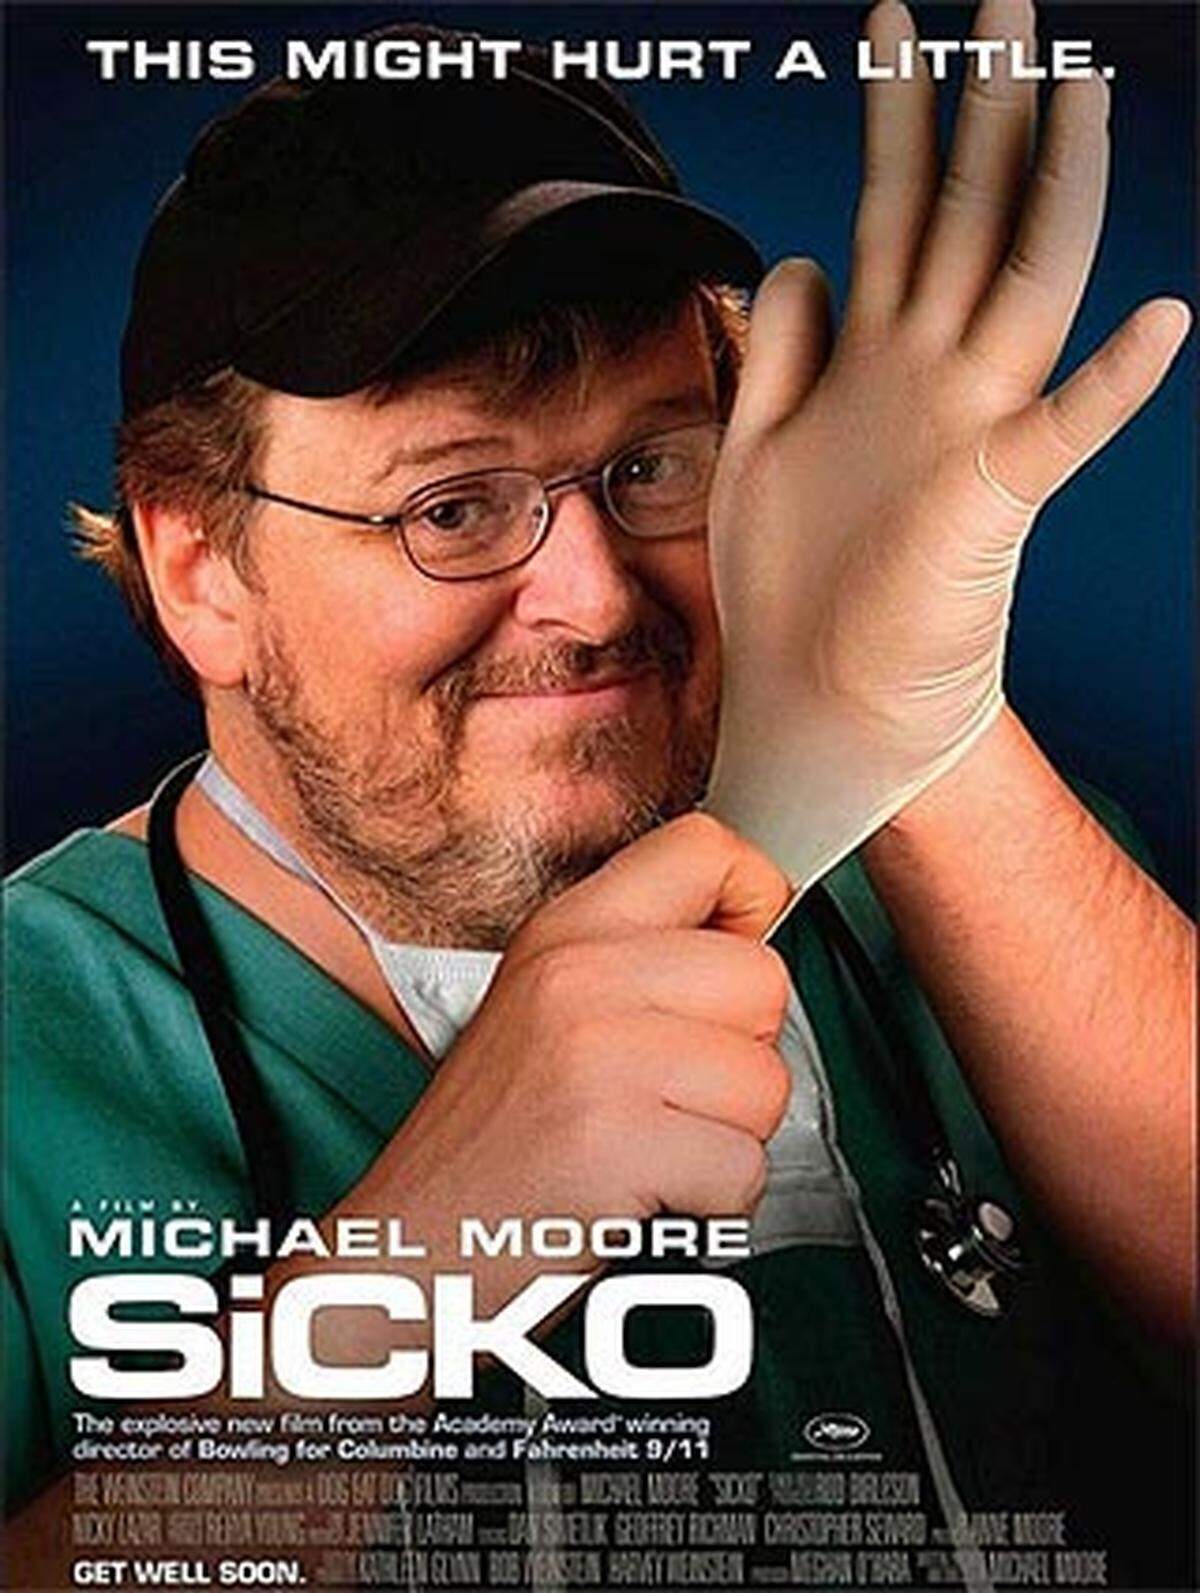 Mit Spannung wird auch der neue Streifen von Michael Moore erwartet. "Sicko" zeigt die Abgründe des amerikanischen Gesundheitssystems. Mehr dazu gibt es in unserem ausführlichen Artikel.